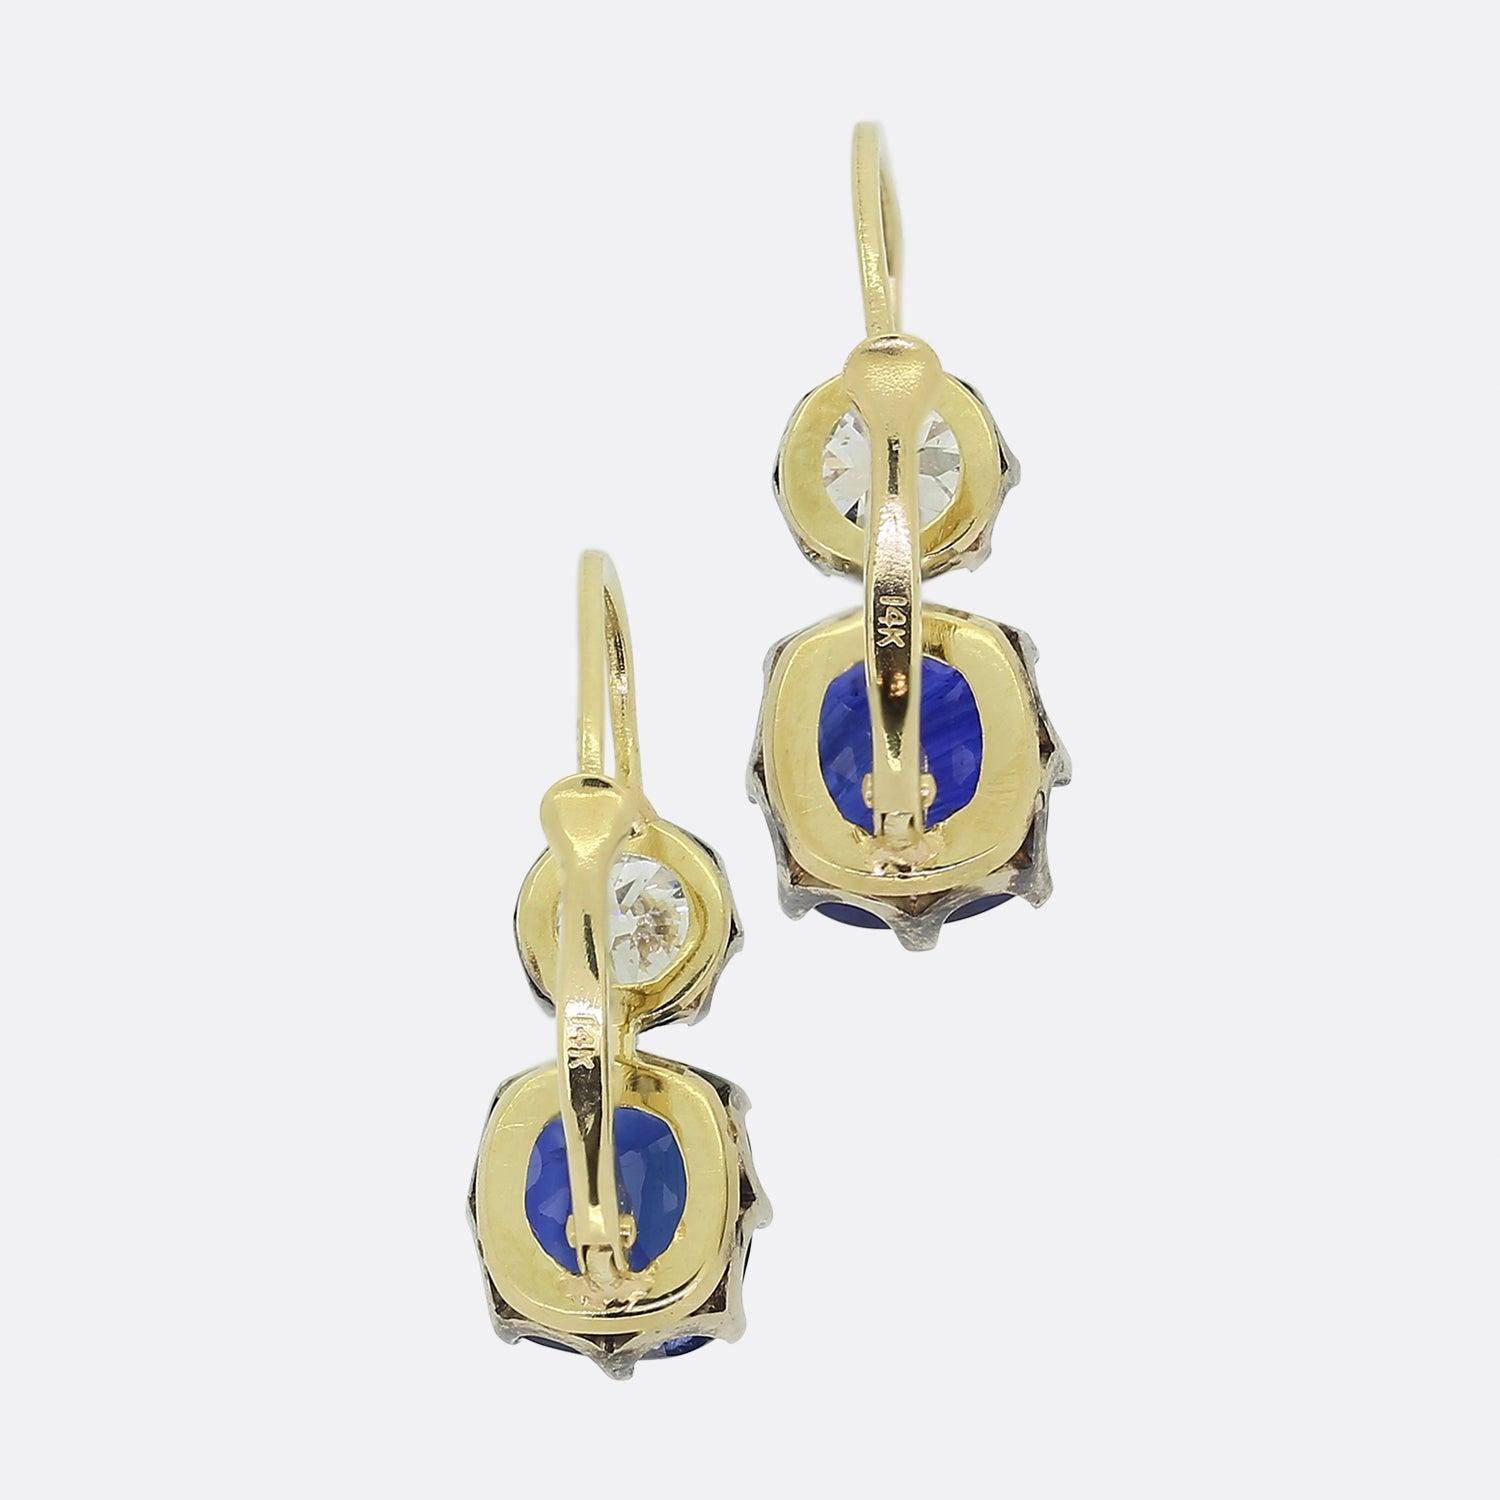 Hier haben wir ein wunderschönes Paar antiker Saphir- und Diamant-Dormeuse-Ohrringe. Jeder Ohrring besteht aus einem Saphir im Kissenschliff und einem Diamanten im alten europäischen Schliff darüber. Die natürlichen Saphire sind perfekt aufeinander